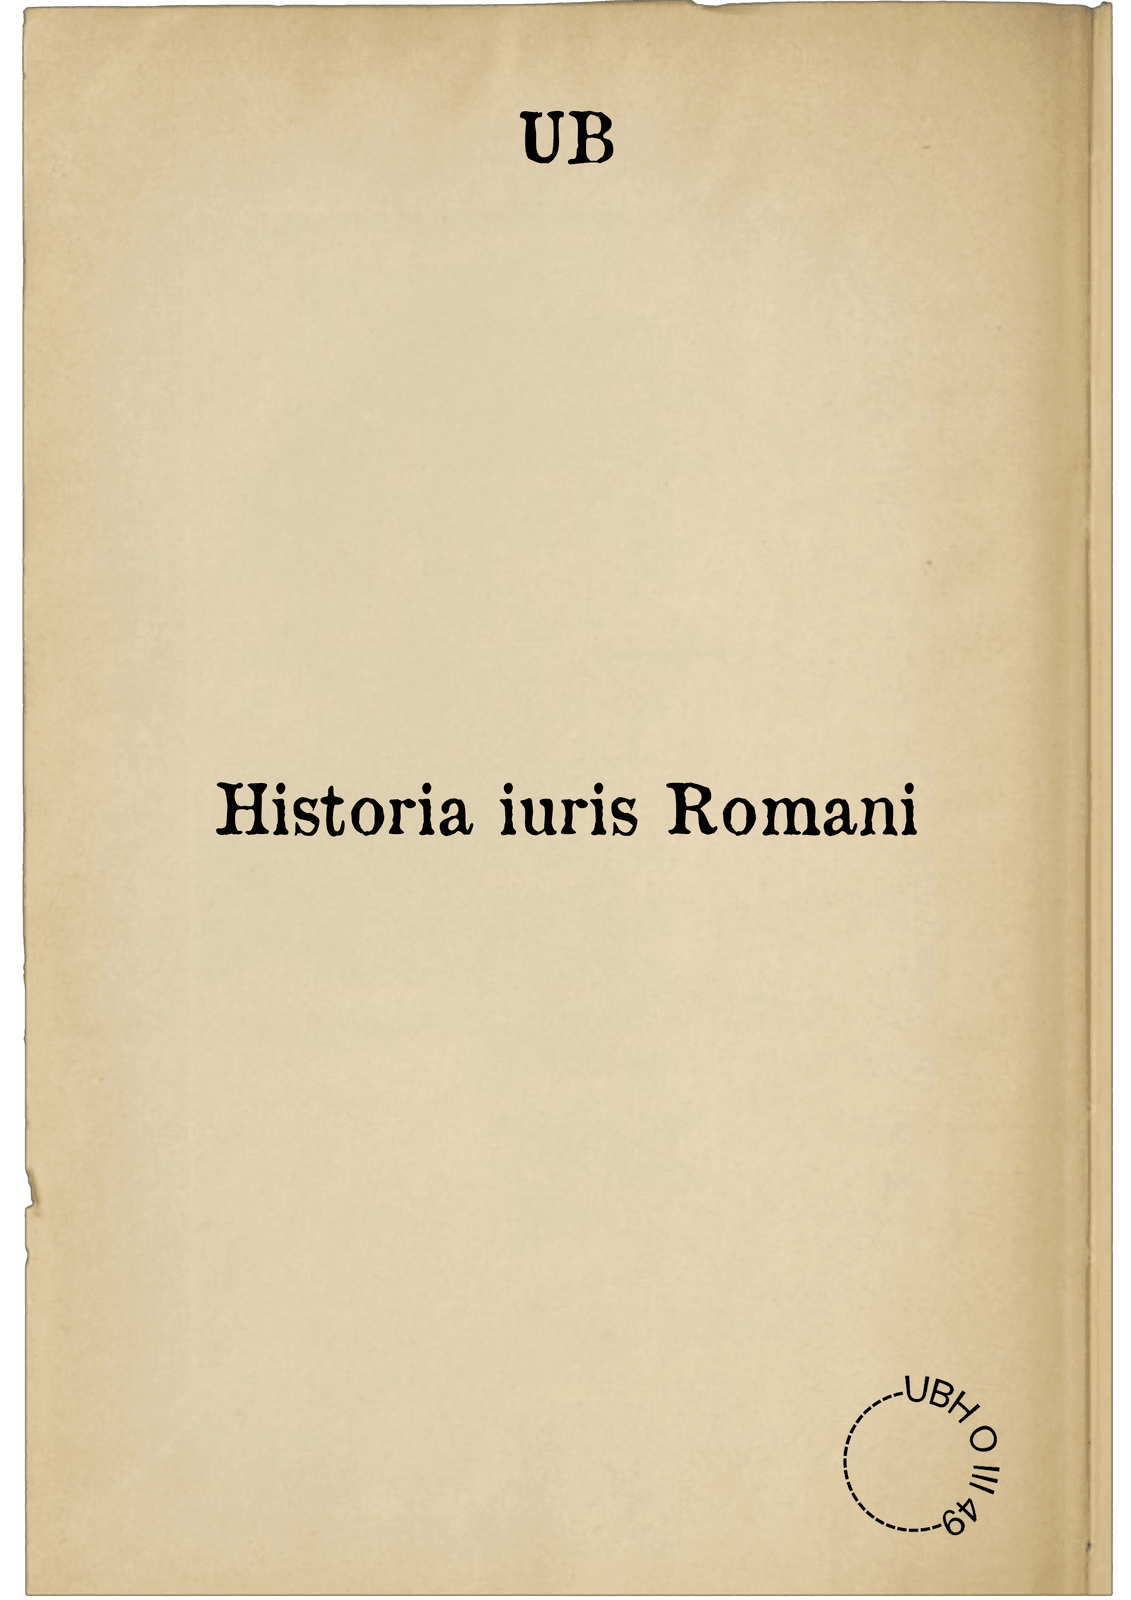 Historia iuris Romani